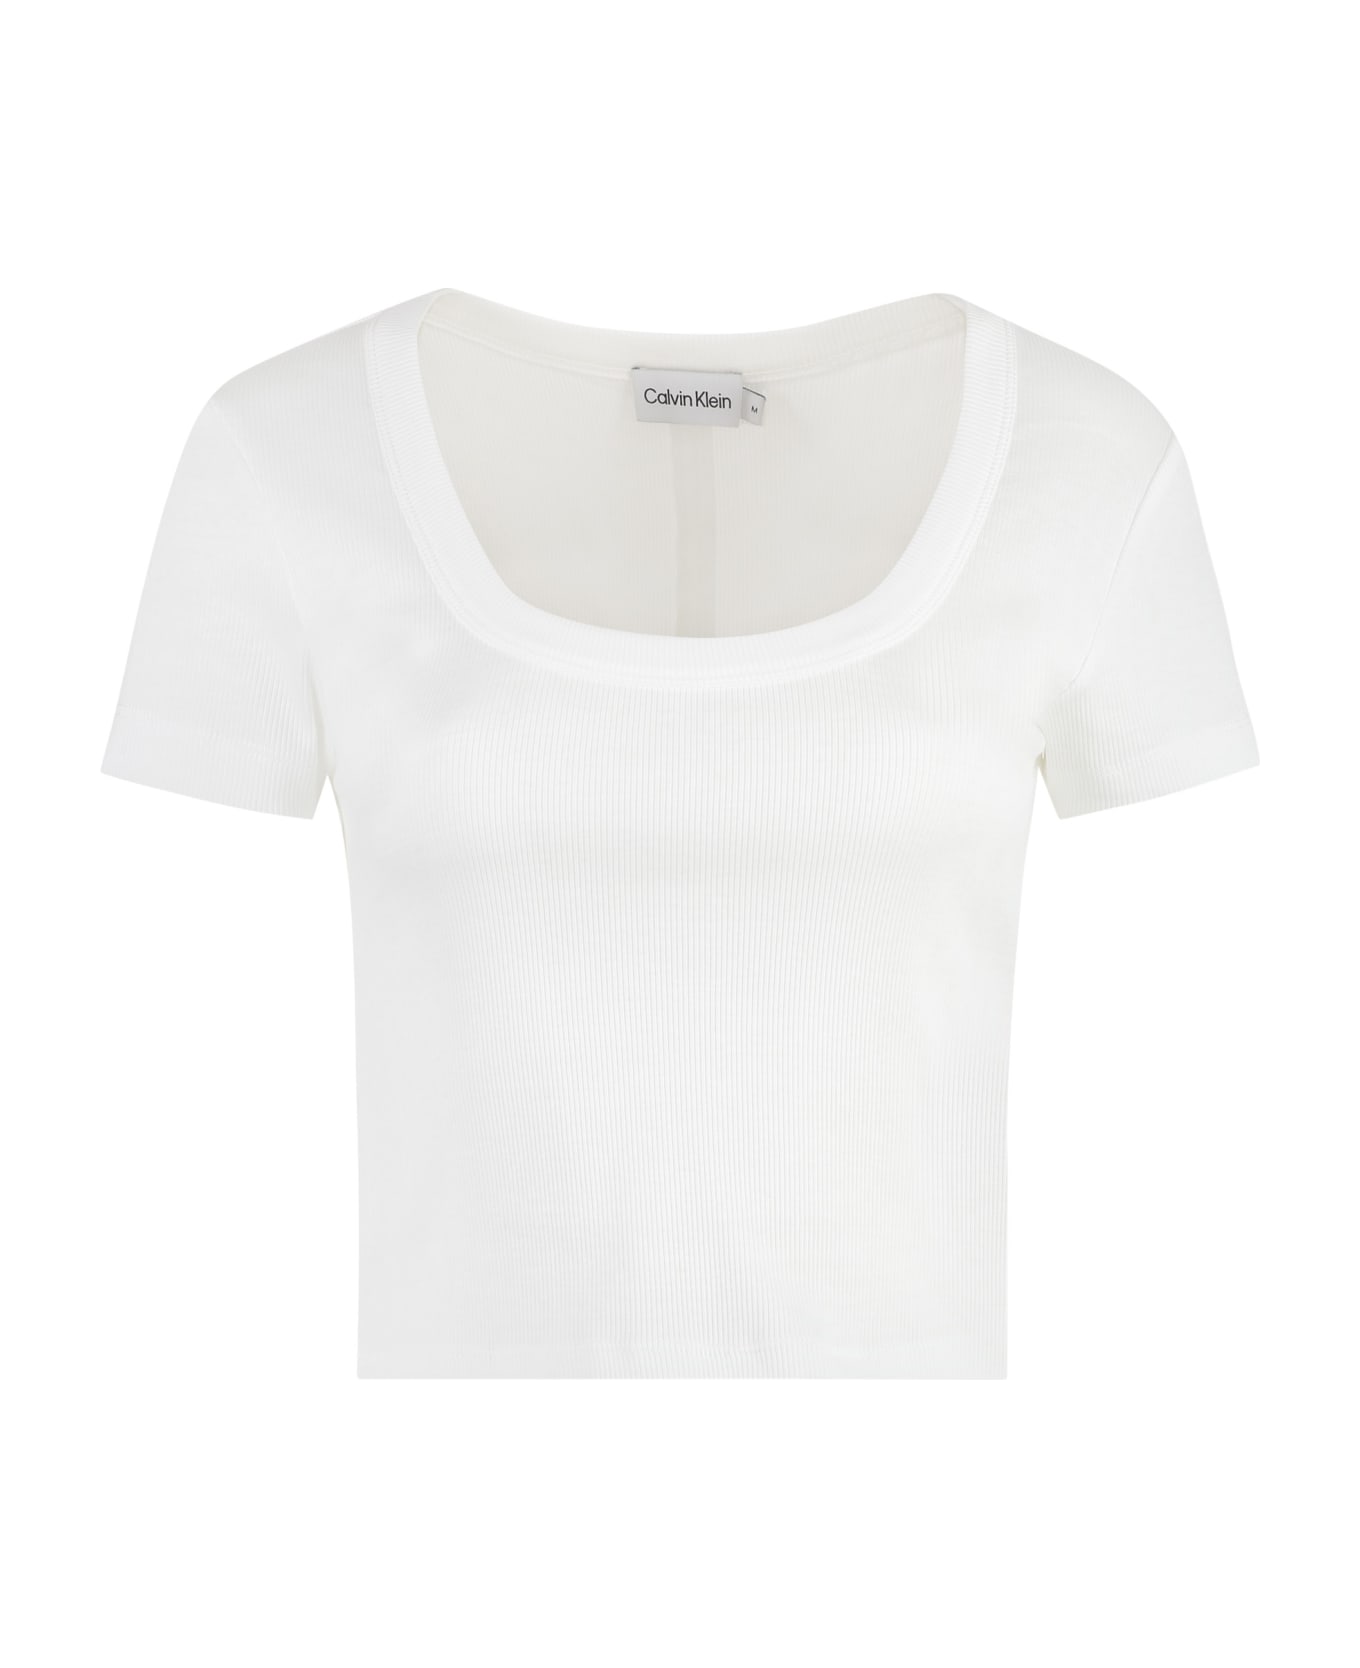 Calvin Klein Cotton Top - White Tシャツ